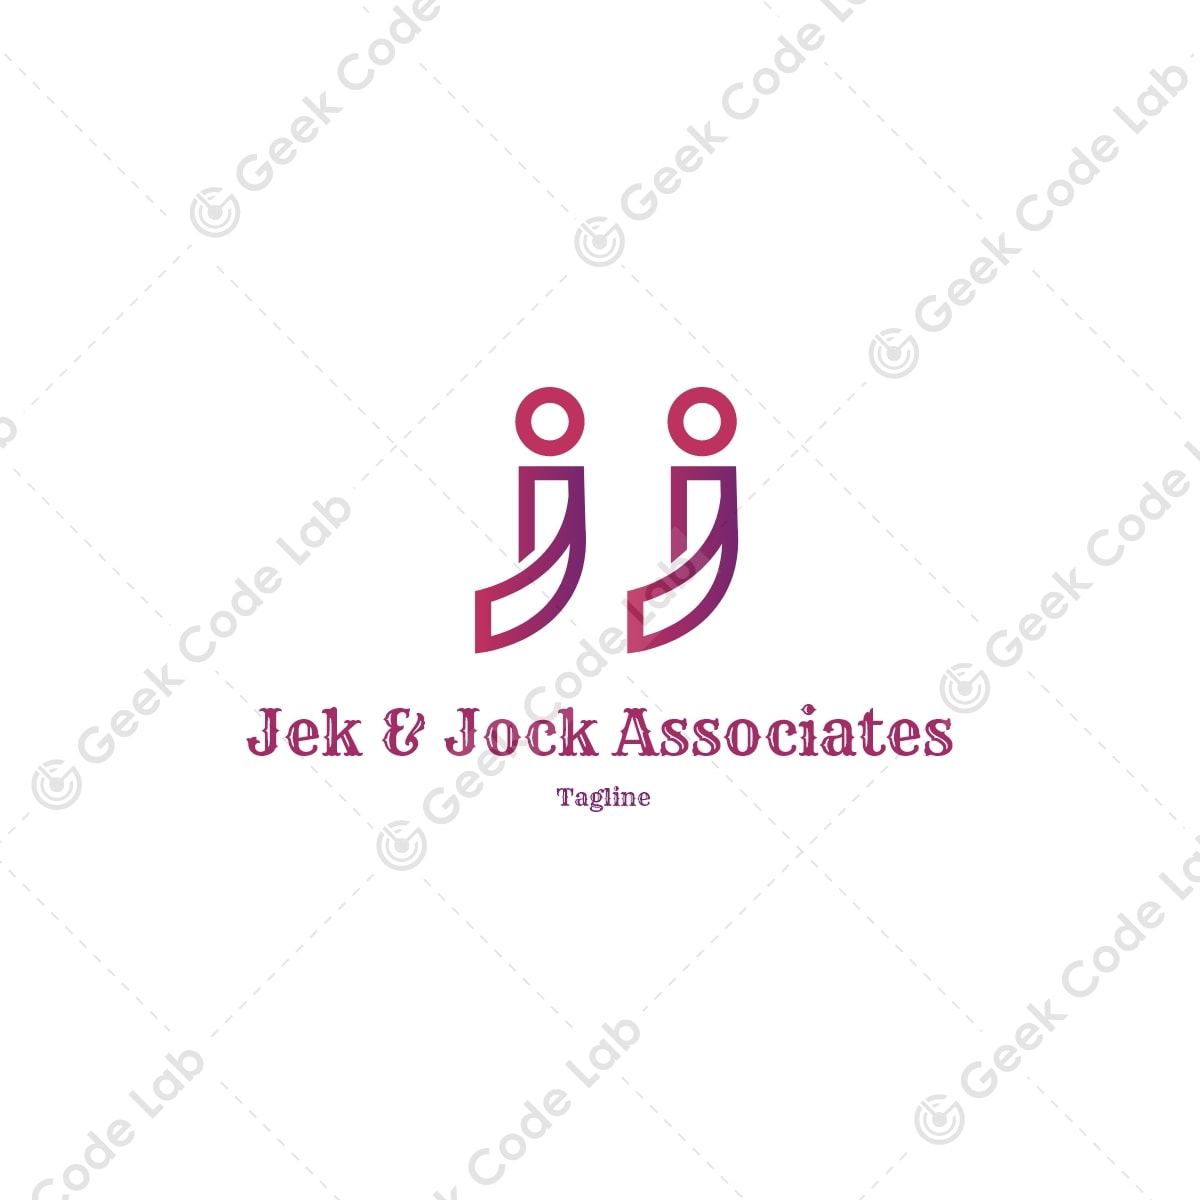 jek & jock Associates